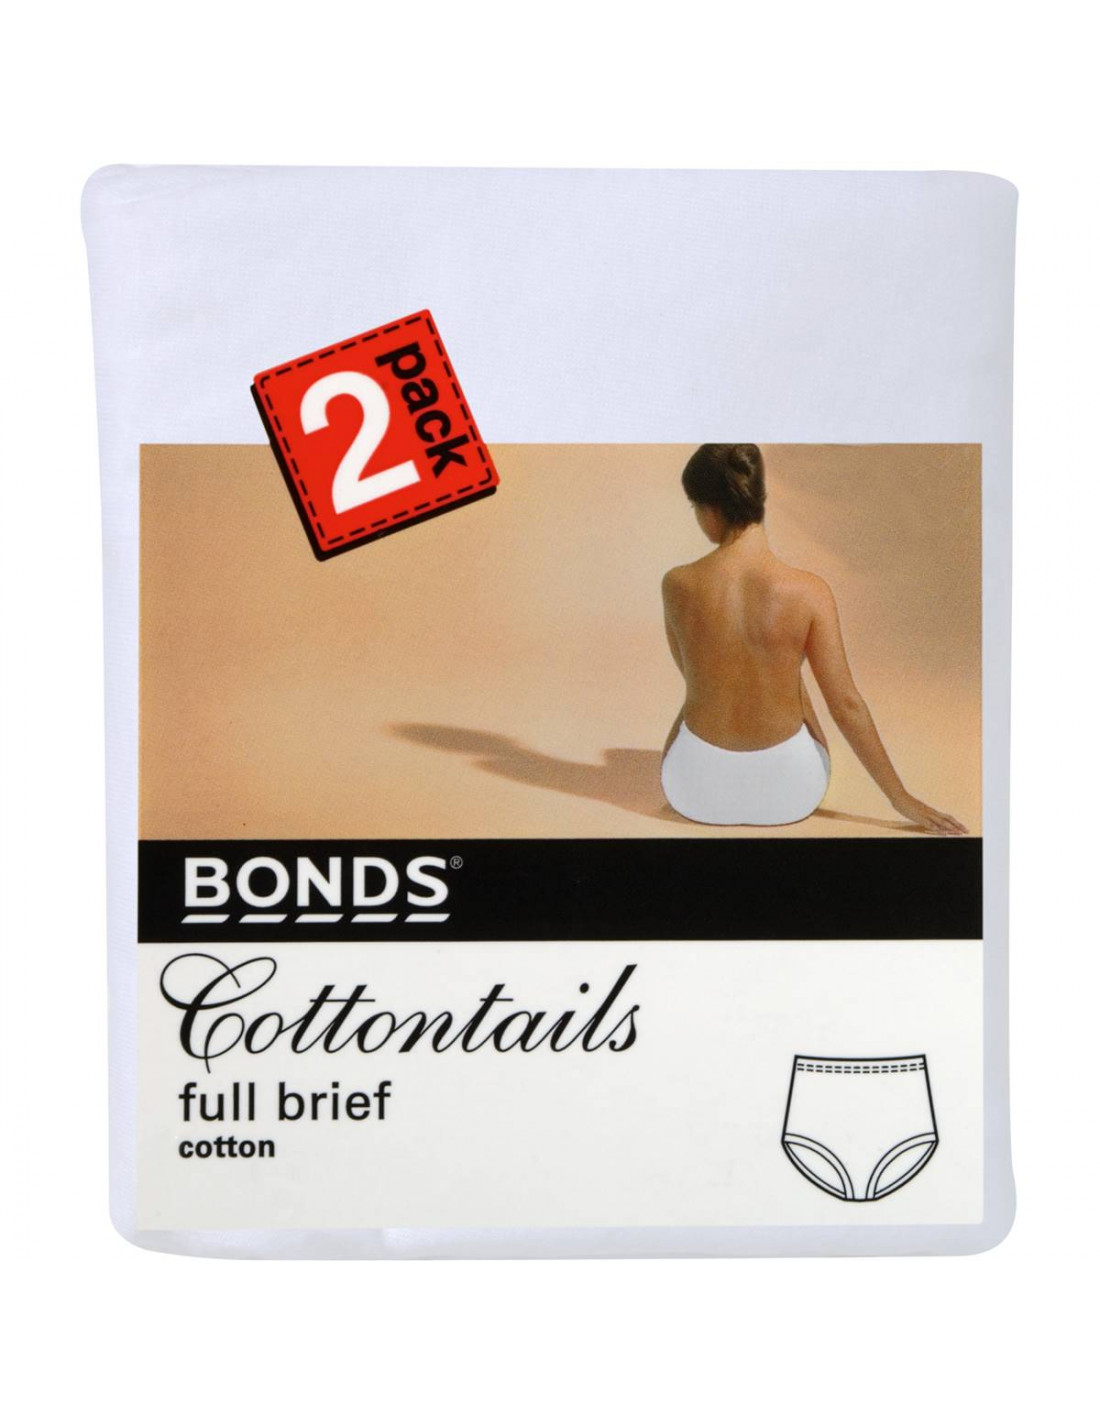 Bonds Cottontails Full Brief